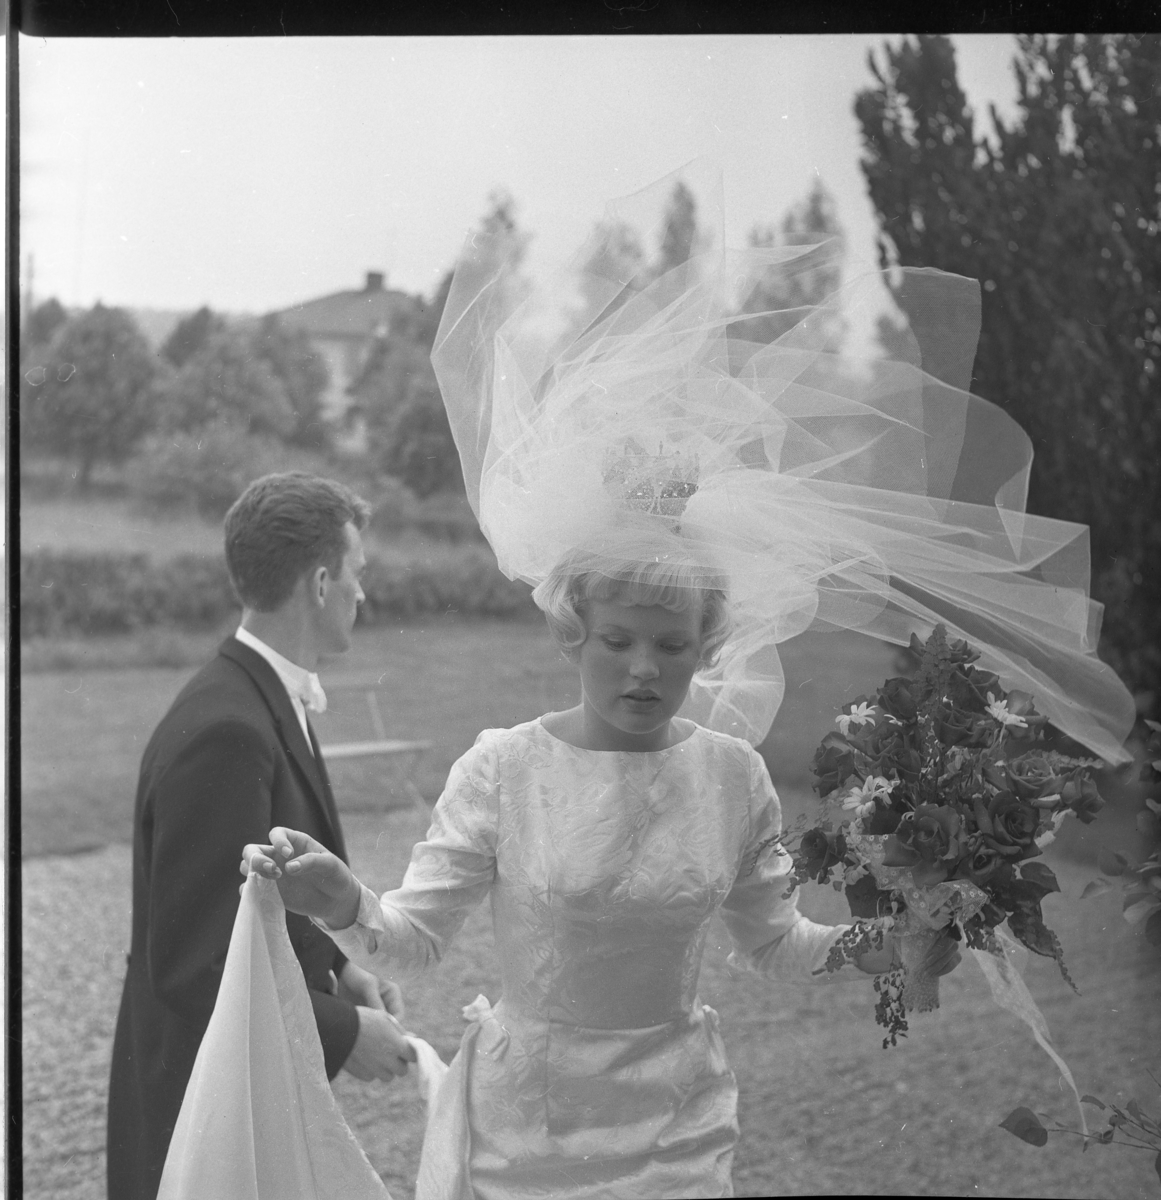 Nygifta Lisbeth Johansson och Rolf Nilsson utanför Örserums kyrka. Hon håller släpet i sin hand och vinden drar i brudslöjan.